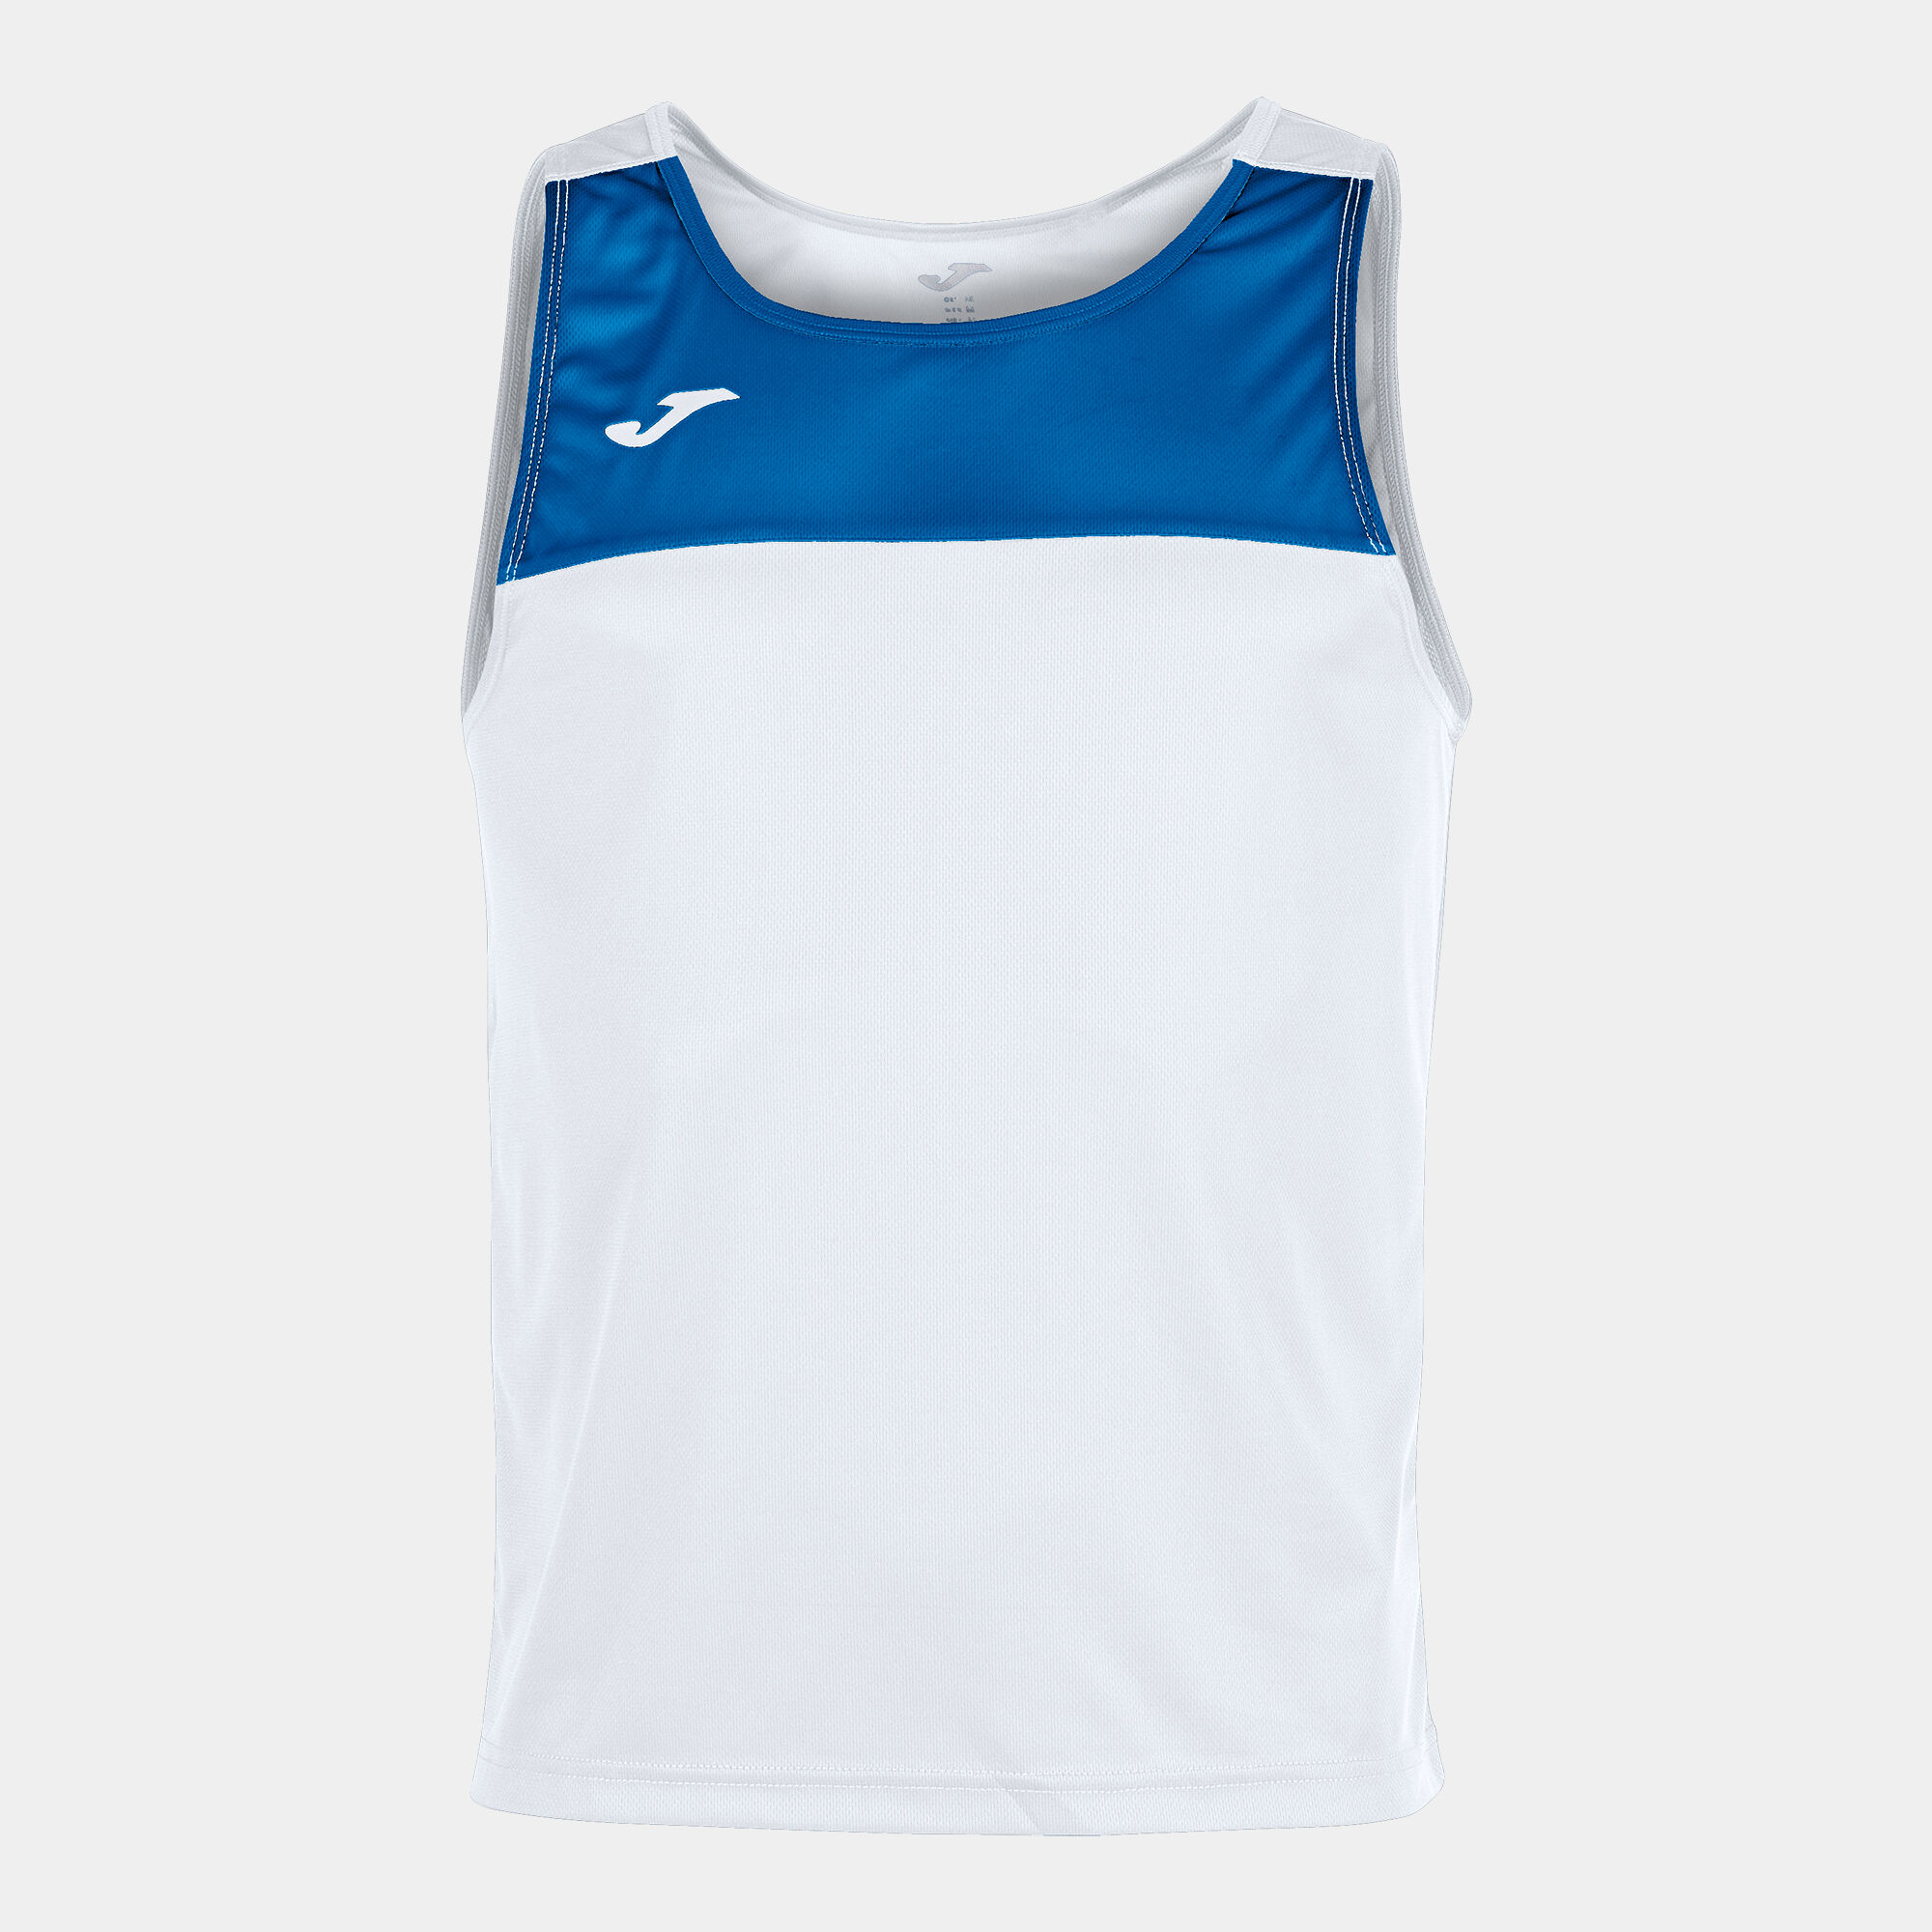 Shirt s/m mann Race weiß königsblau